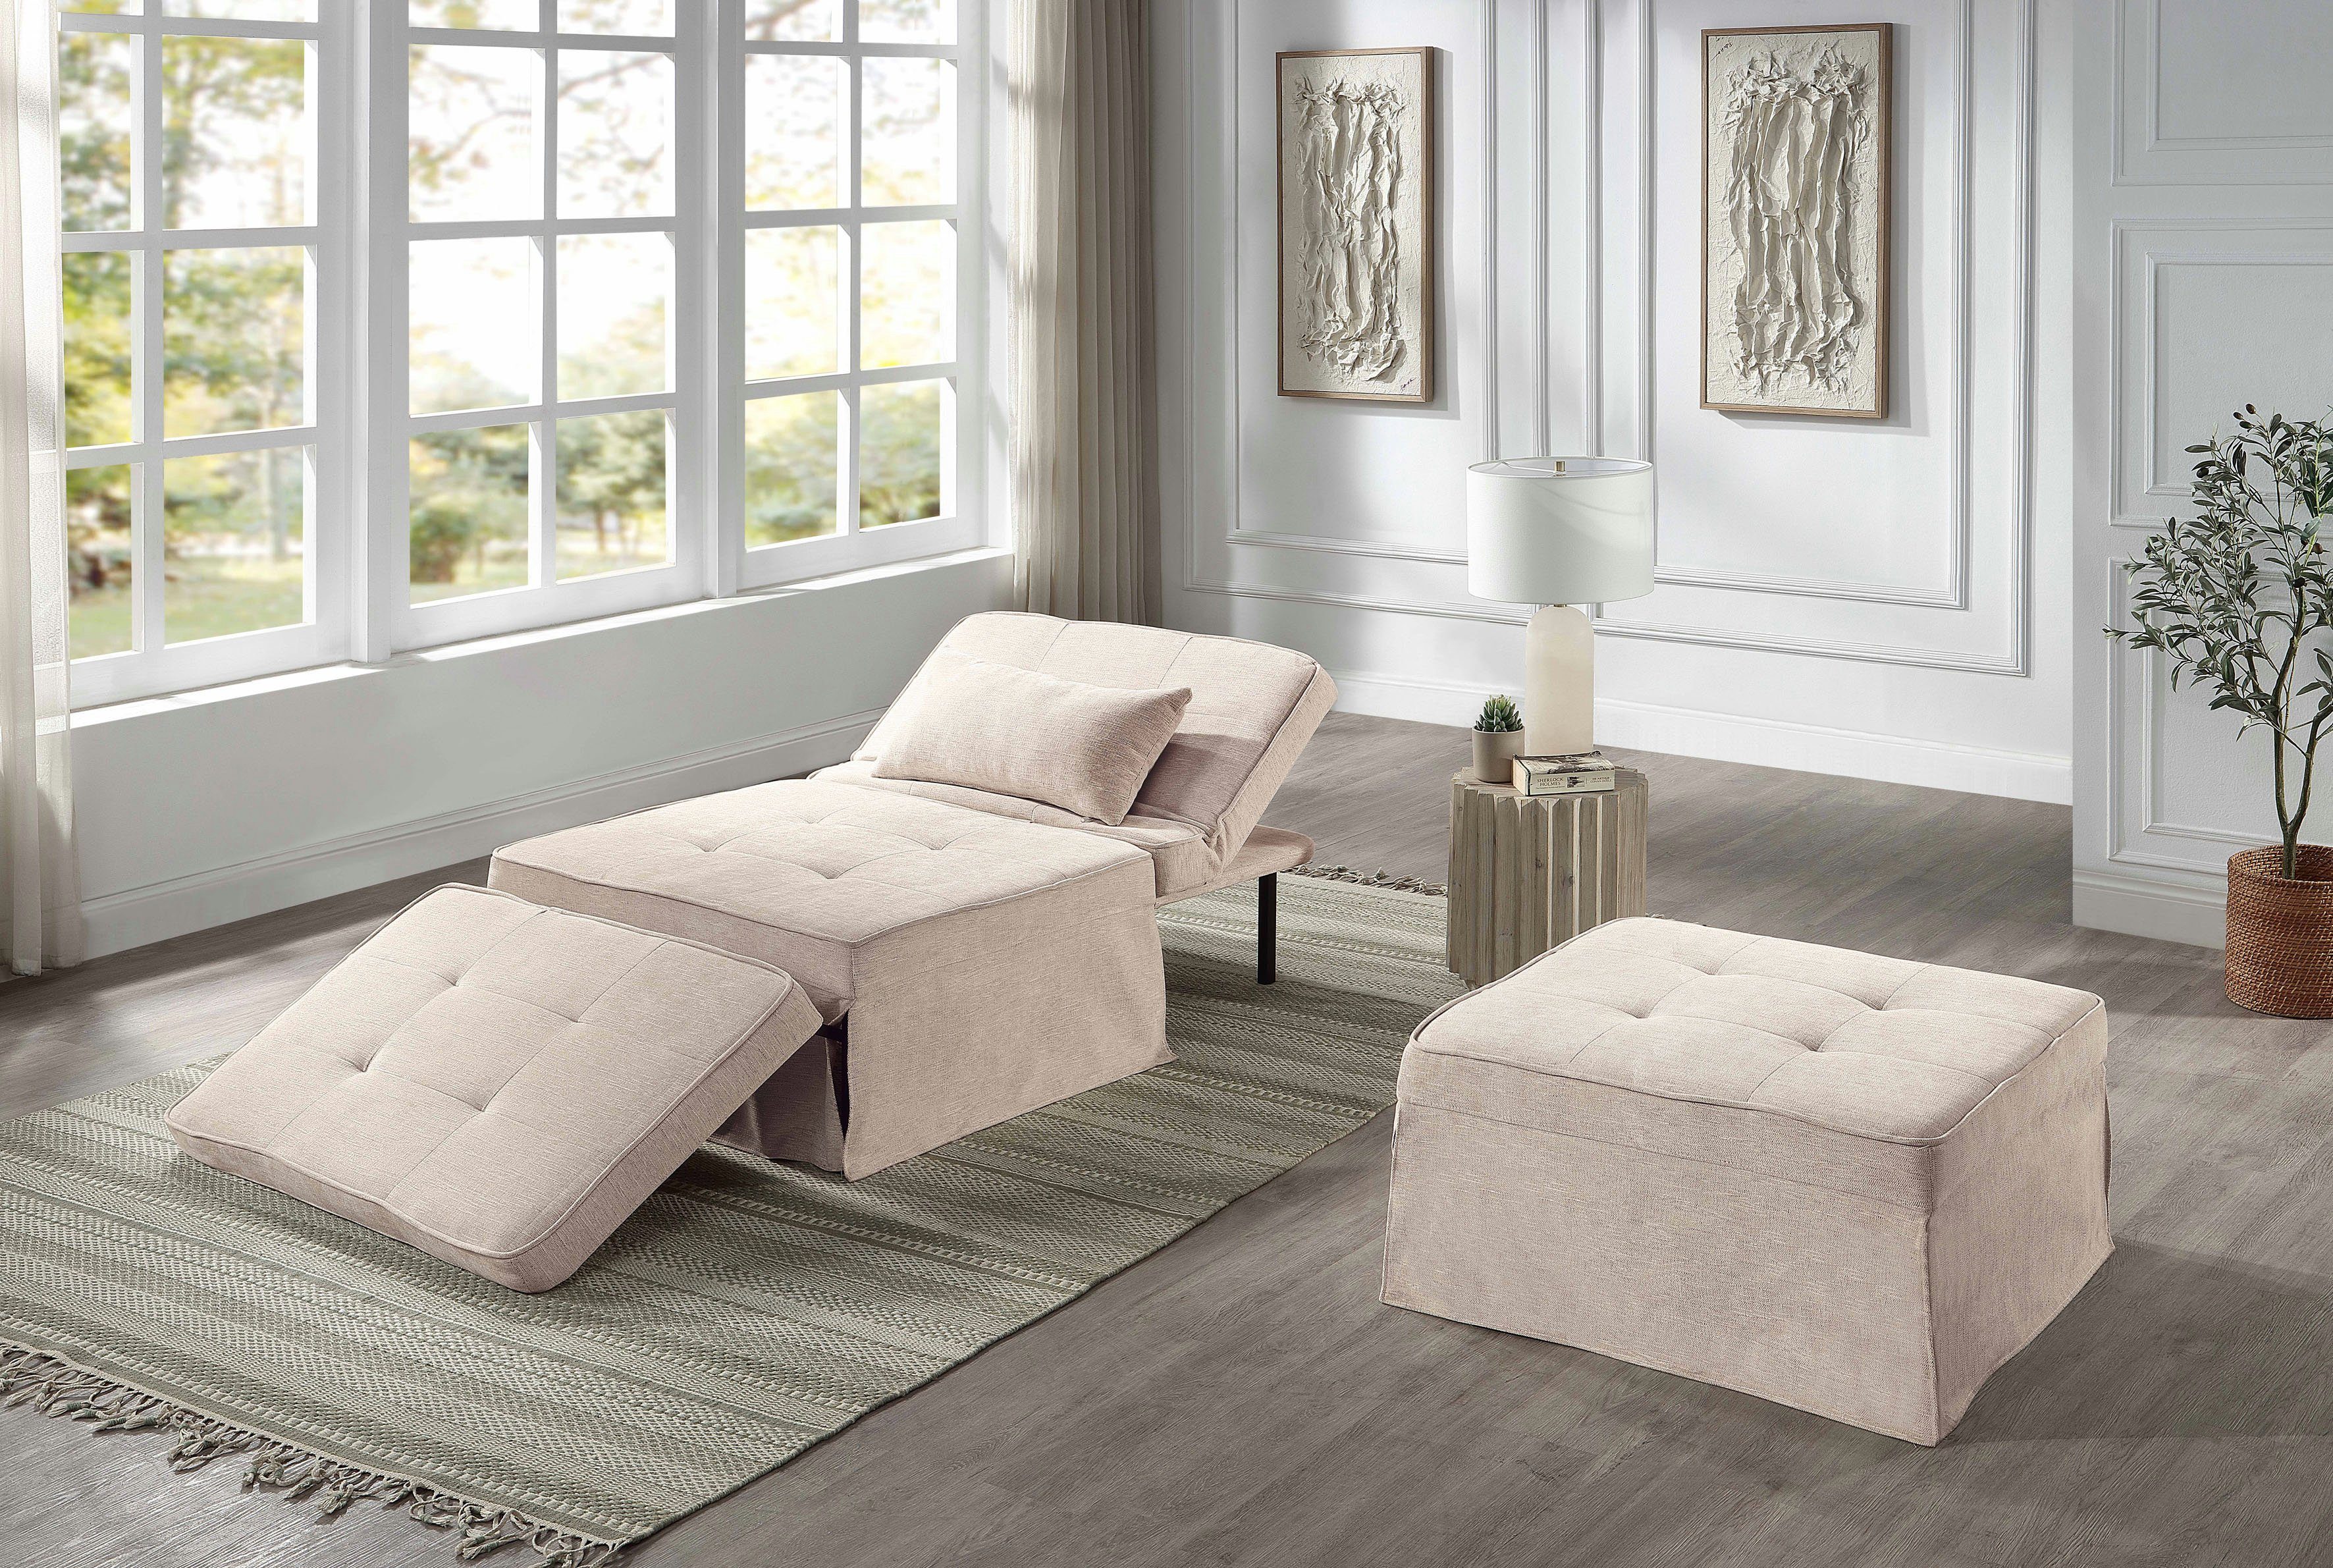 atlantic home collection slaapbank finn te veranderen in een loungestoel, relaxfauteuil en logeerbed, incl. kussen beige